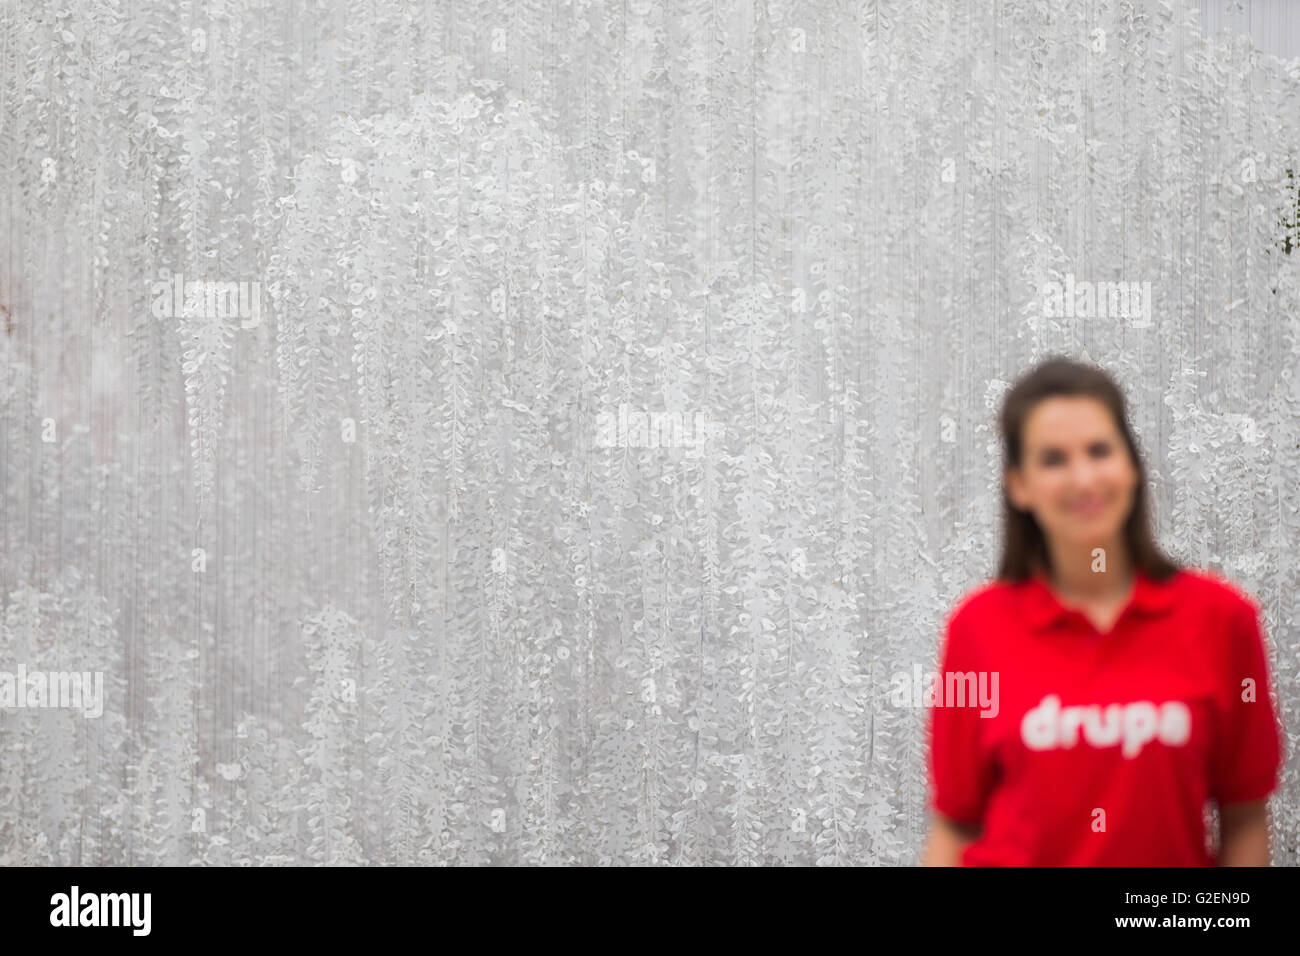 Duesseldorf, Germania. Il 30 maggio 2016. Un modello sta in piedi di fronte ad un arte di installazione del gruppo artistico Wanda Barcellona, che è fatta di 8.000 fogli A0 carta durante un tour fotografico del 'Drupa' stampa media fiera di Duesseldorf, Germania, 30 maggio 2016. Drupa, la più grande fiera per i supporti di stampa che si svolge dal 31 maggio fino al 10 giugno 2016 a Duesseldorf. Foto: ROLF VENNENBERND/dpa/Alamy Live News Foto Stock